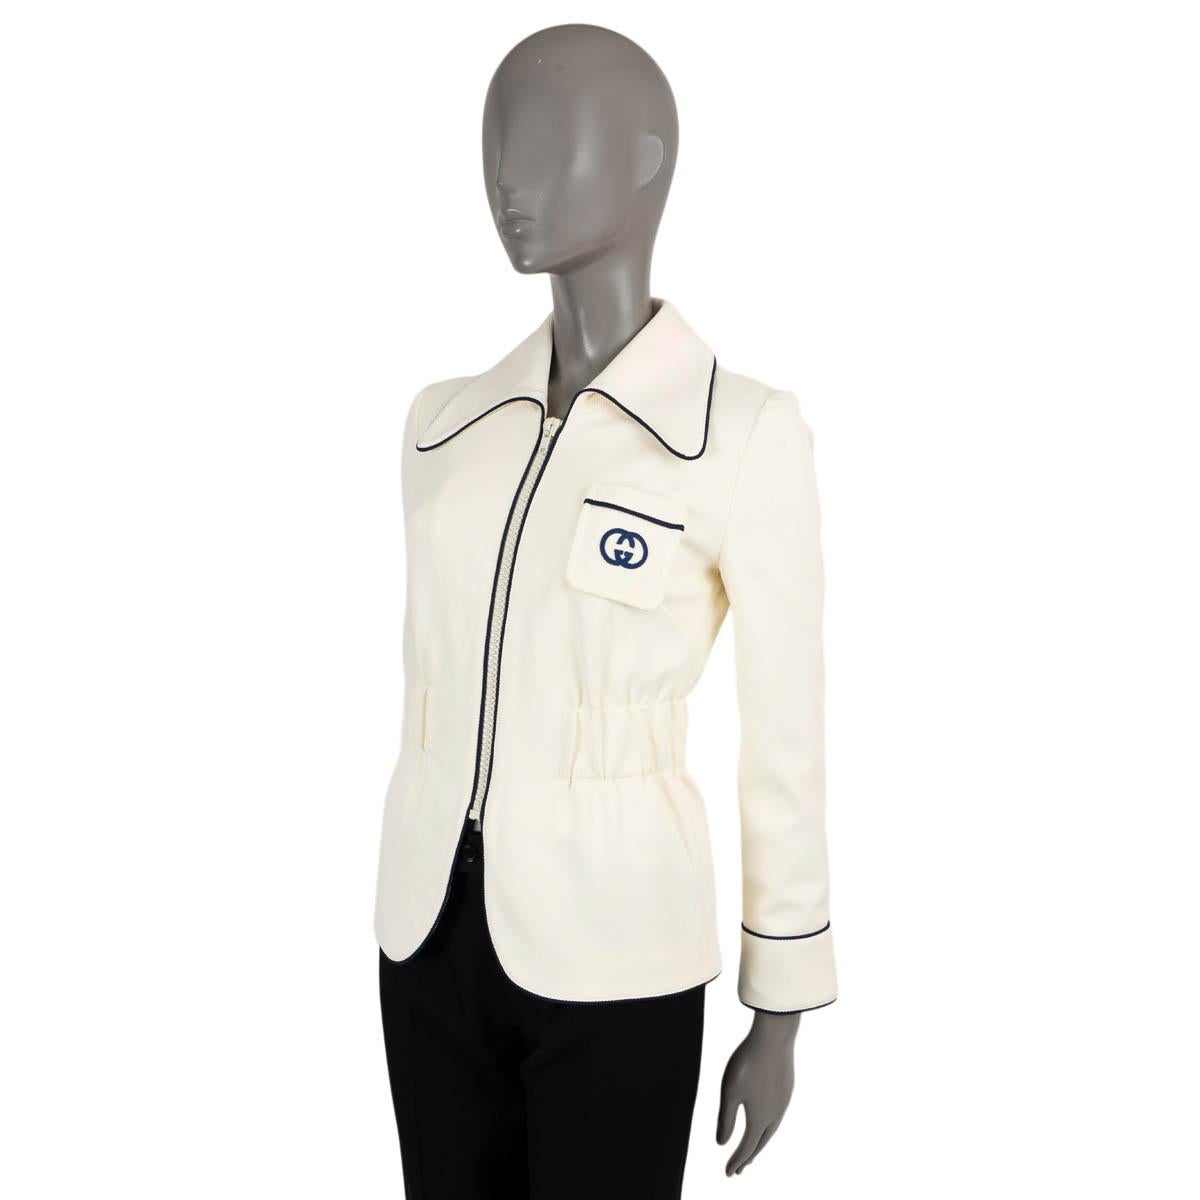 Veste en jersey de polyamide ivoire (100%) avec bordures bleu marine, 100% authentique Gucci GG. Ce modèle présente une fermeture à glissière sur le devant, des poignets zippés, une poche plaquée sur la poitrine et une taille élastique. Doublée en